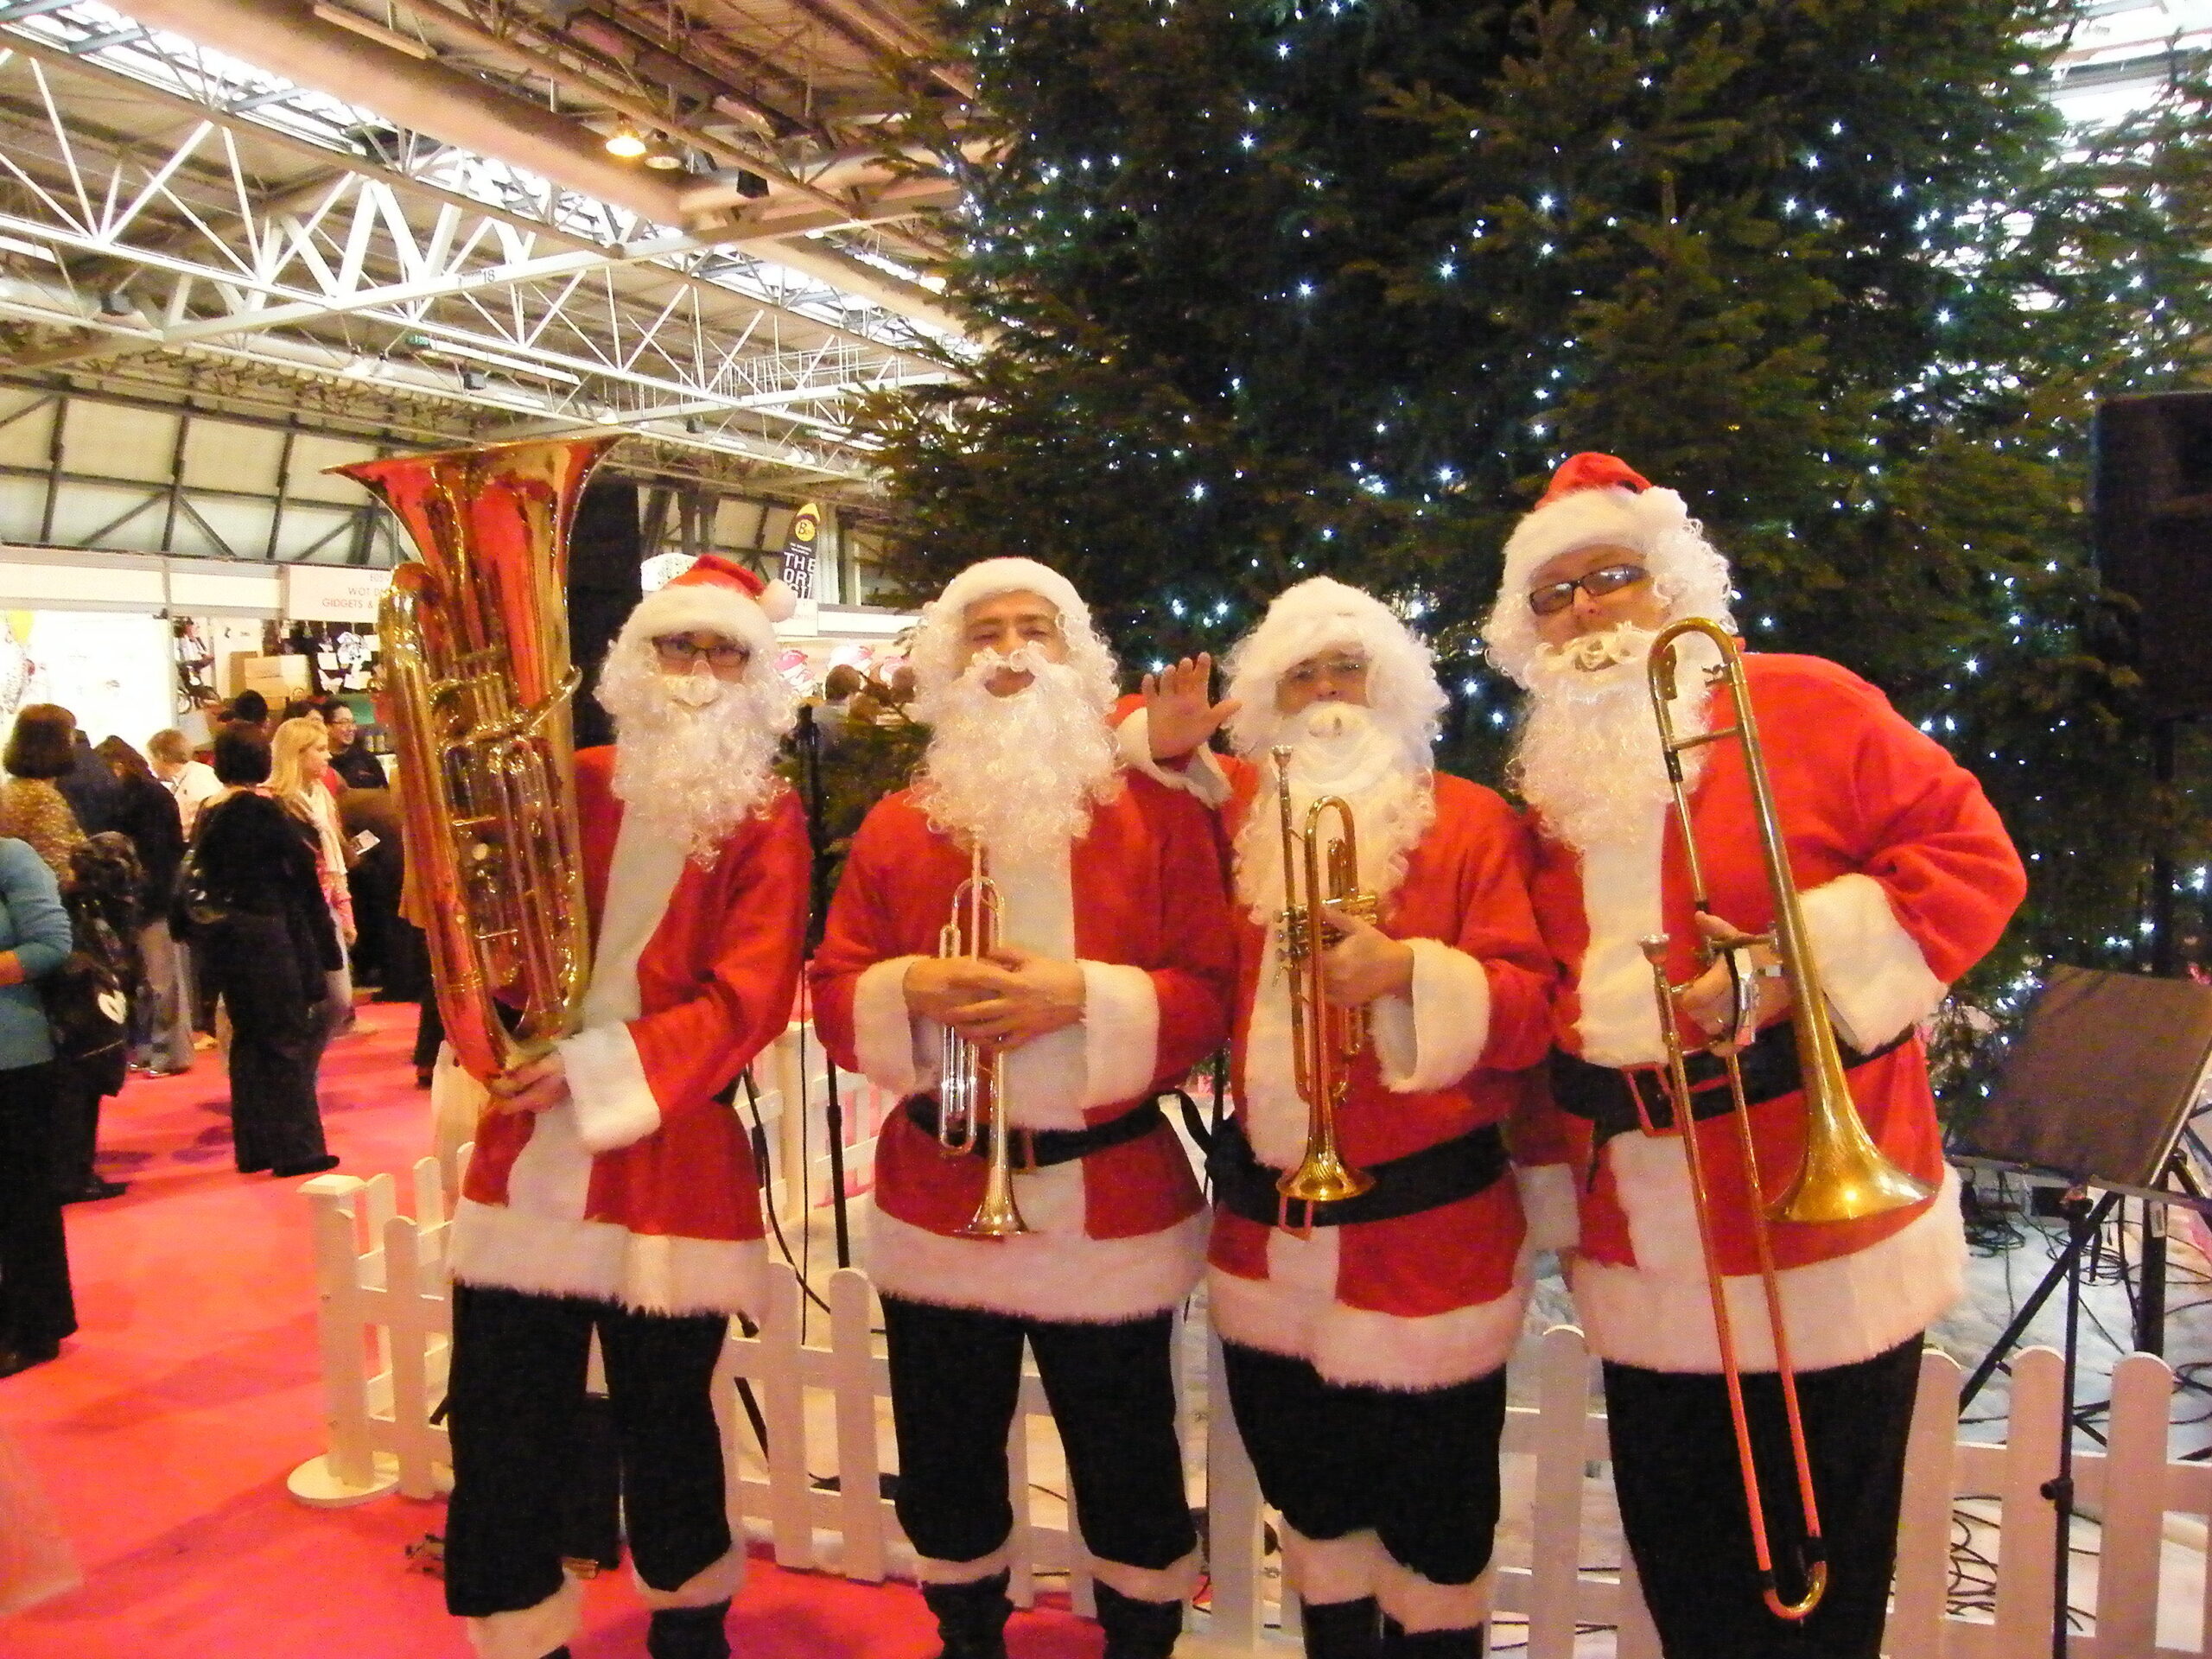 The Brass Santas